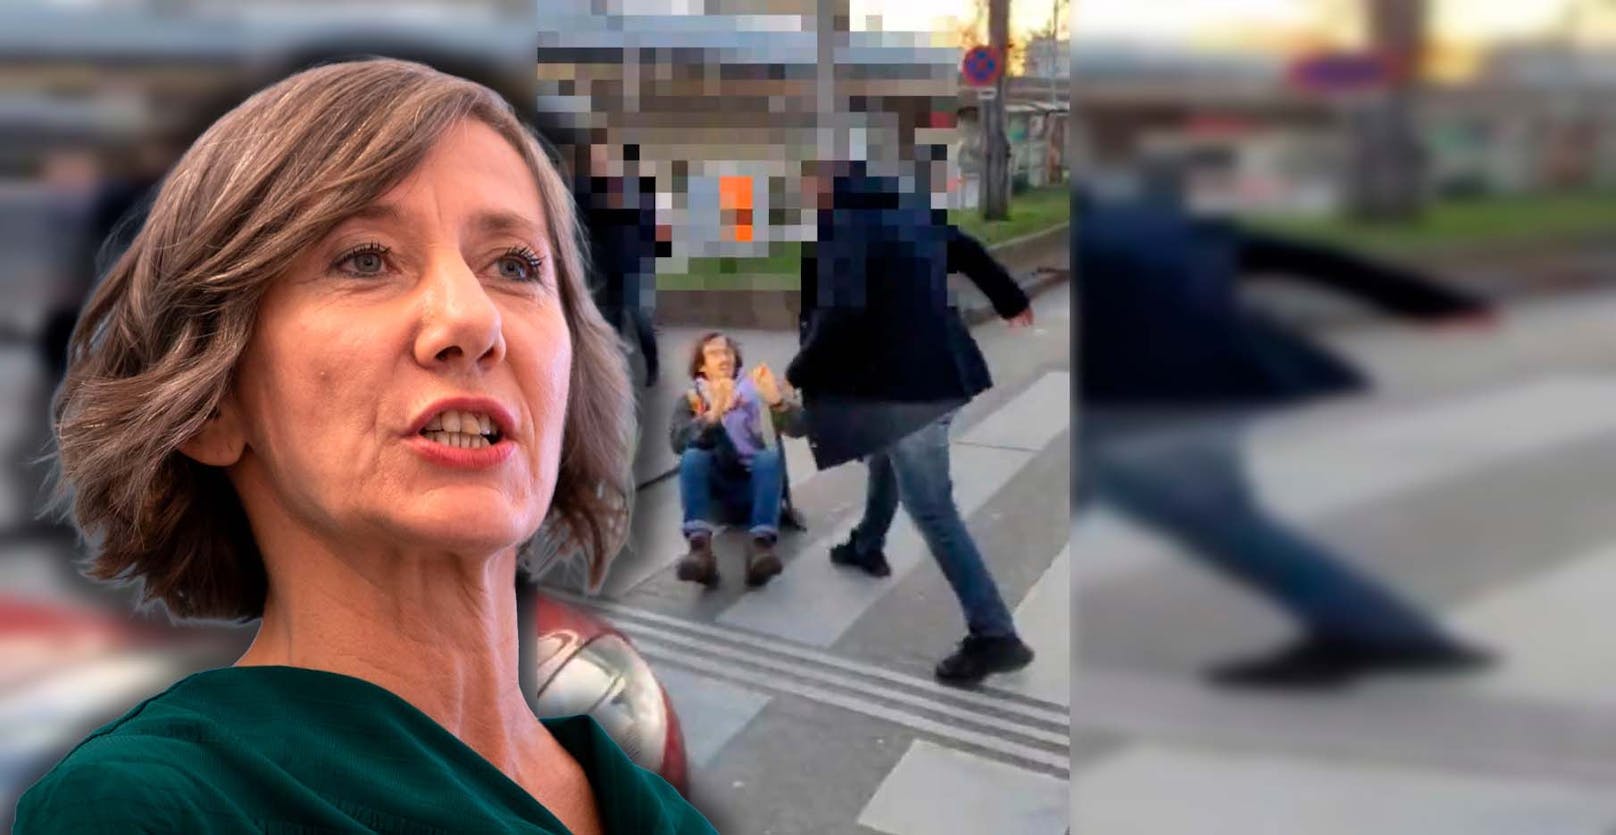 Ex-Grünen-Chefin fährt mit Kritik an Wiener Polizei ein